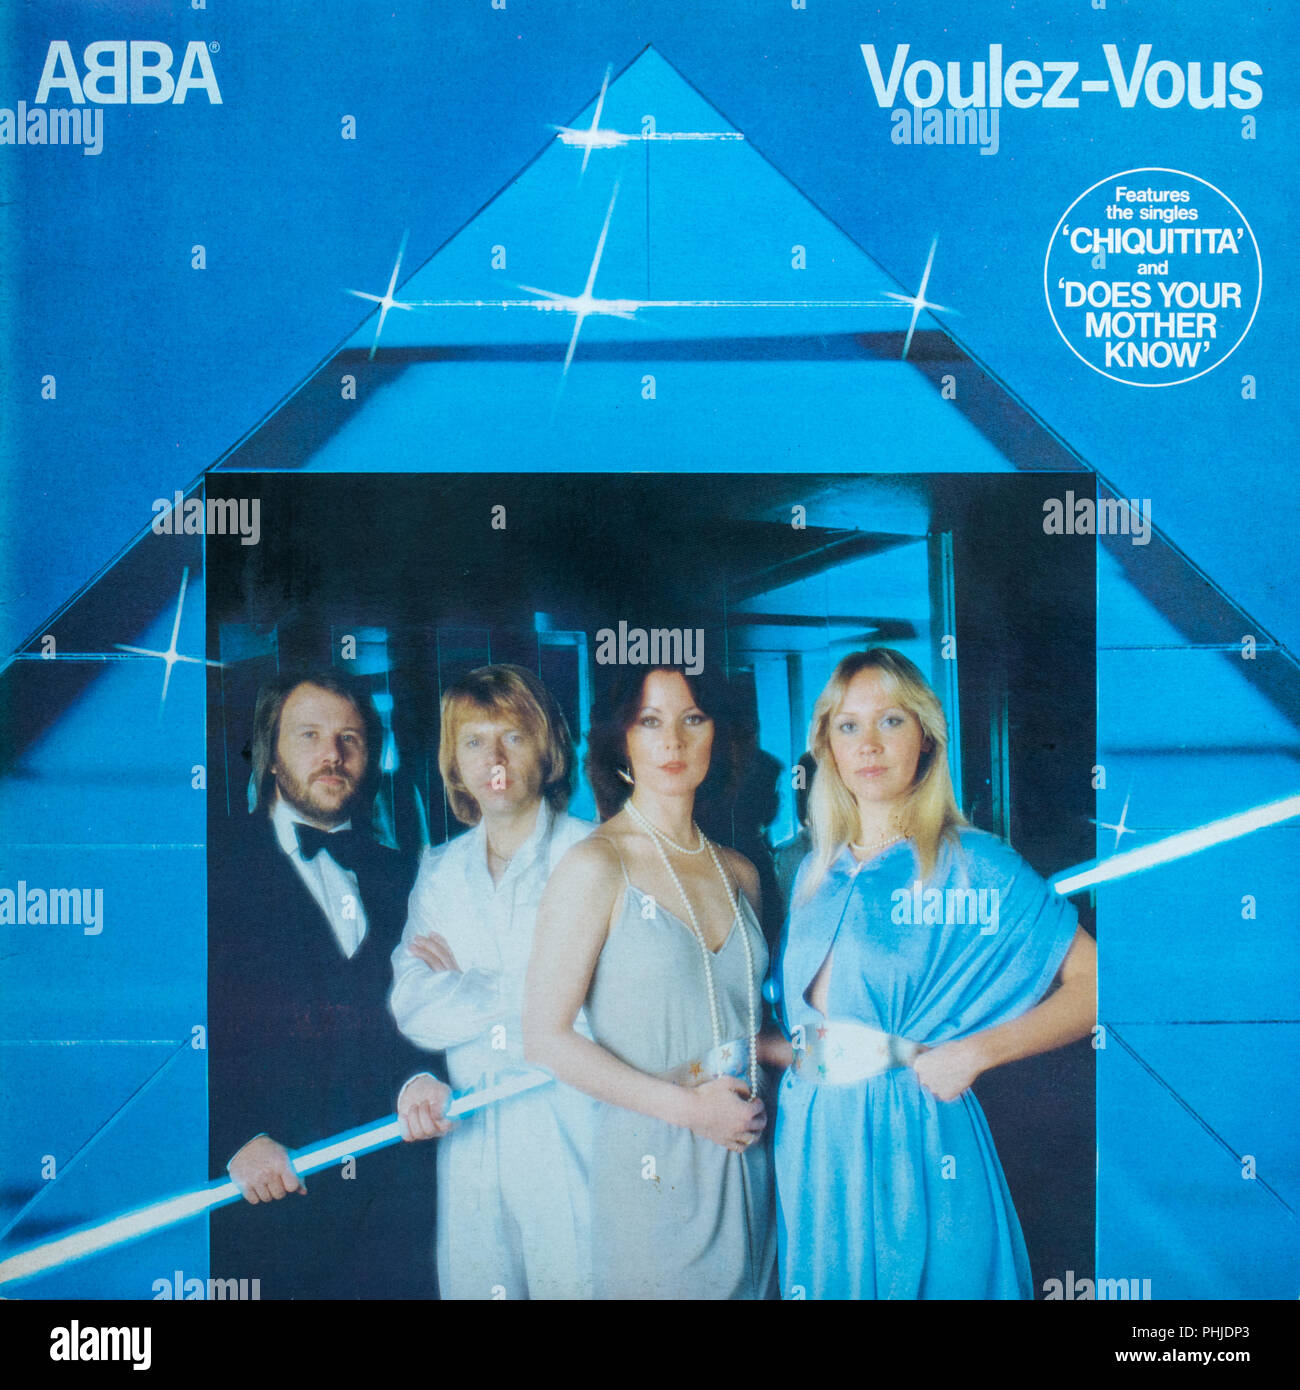 Abba Voulez Vous album cover Stock Photo